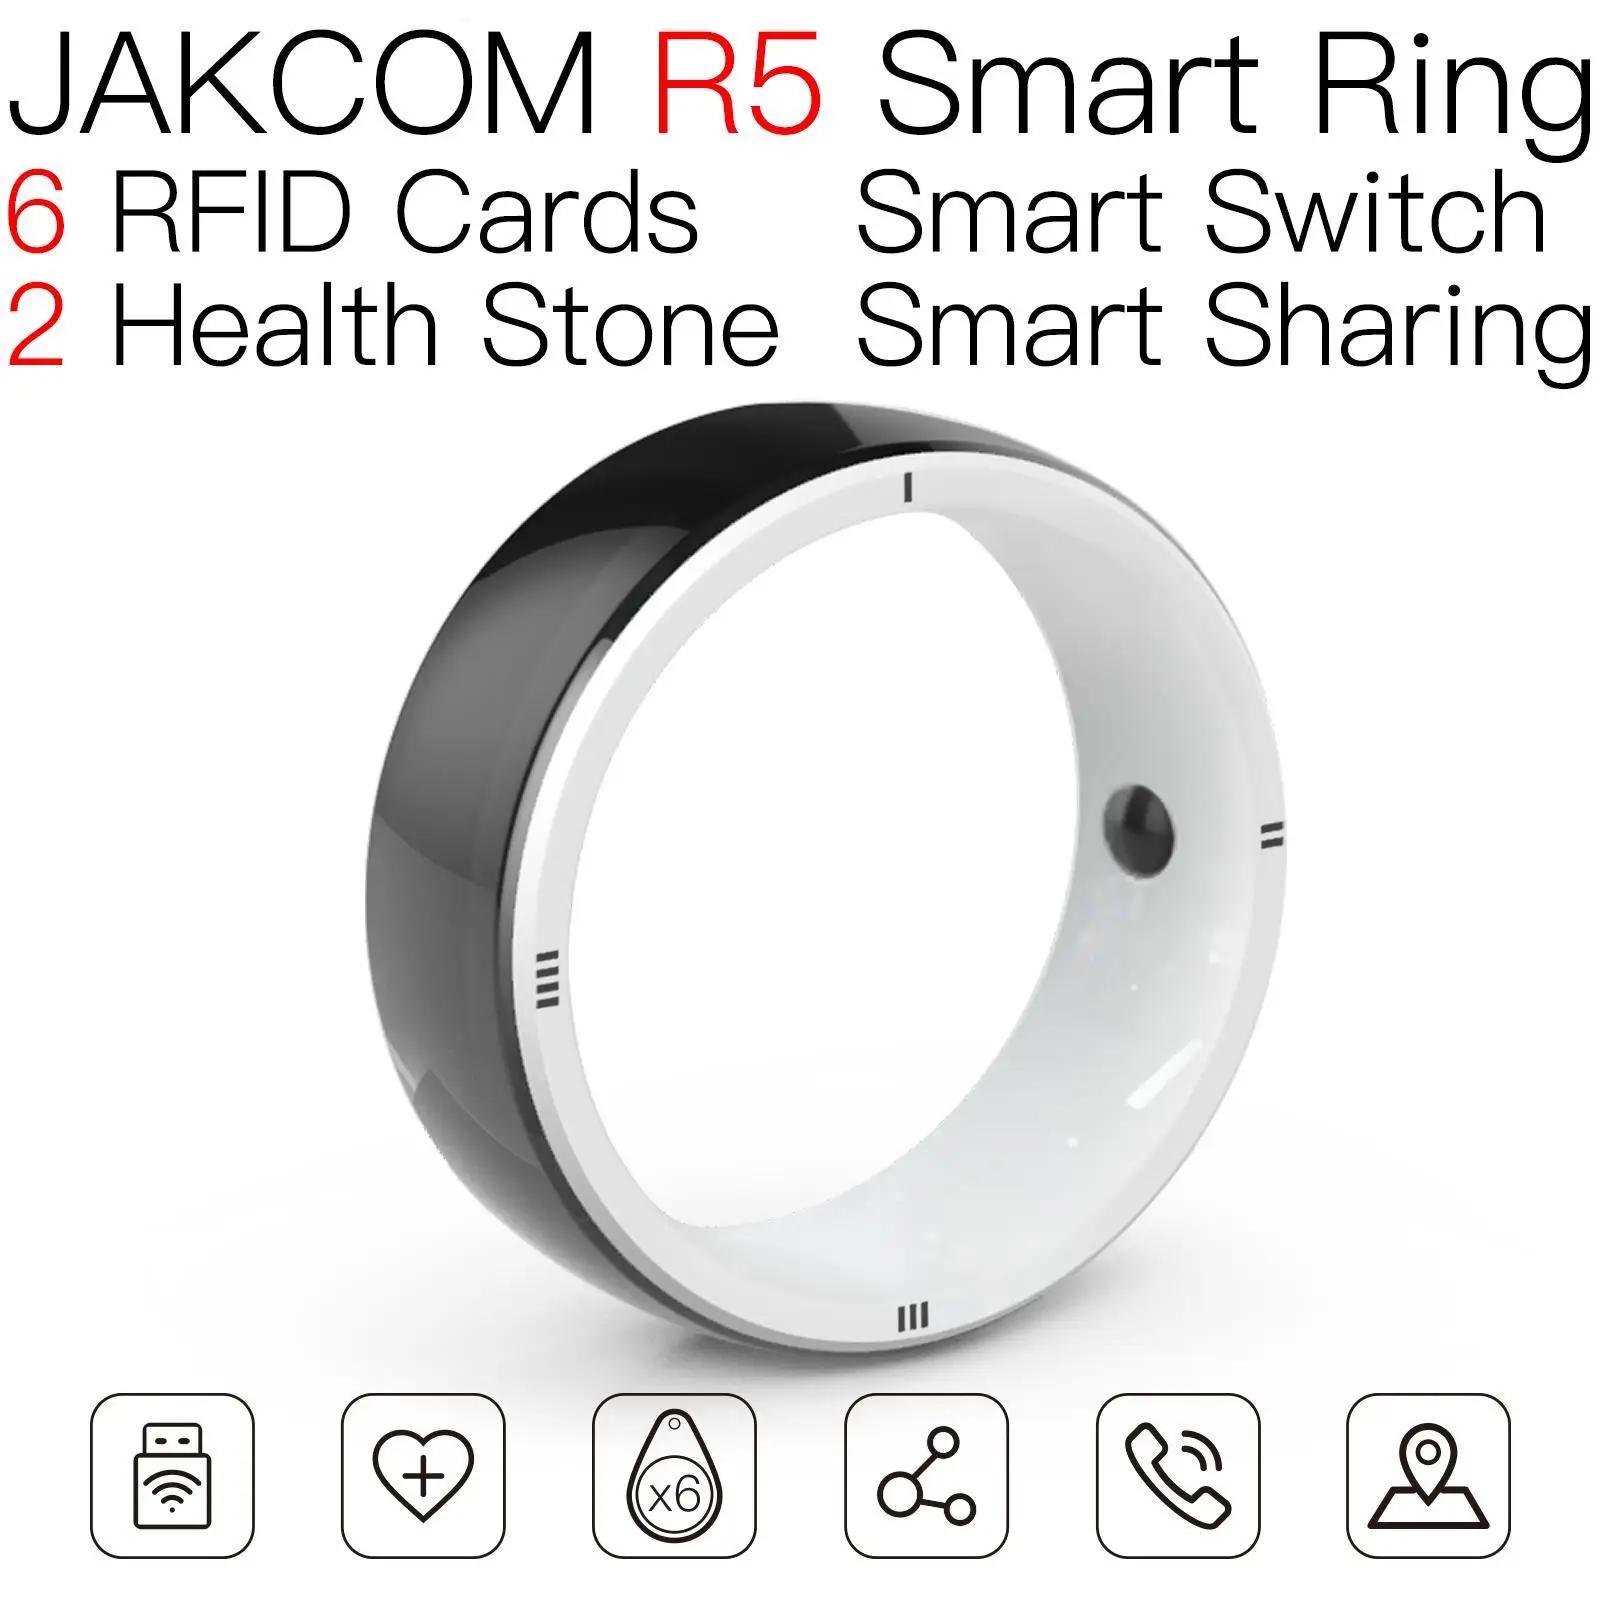 

Смарт-кольцо JAKCOM R5, супер ценность, чем инструменты, чип карты, смартфон nfs ключ uhf rfid, считыватель на большие расстояния, стандартная оплата п...